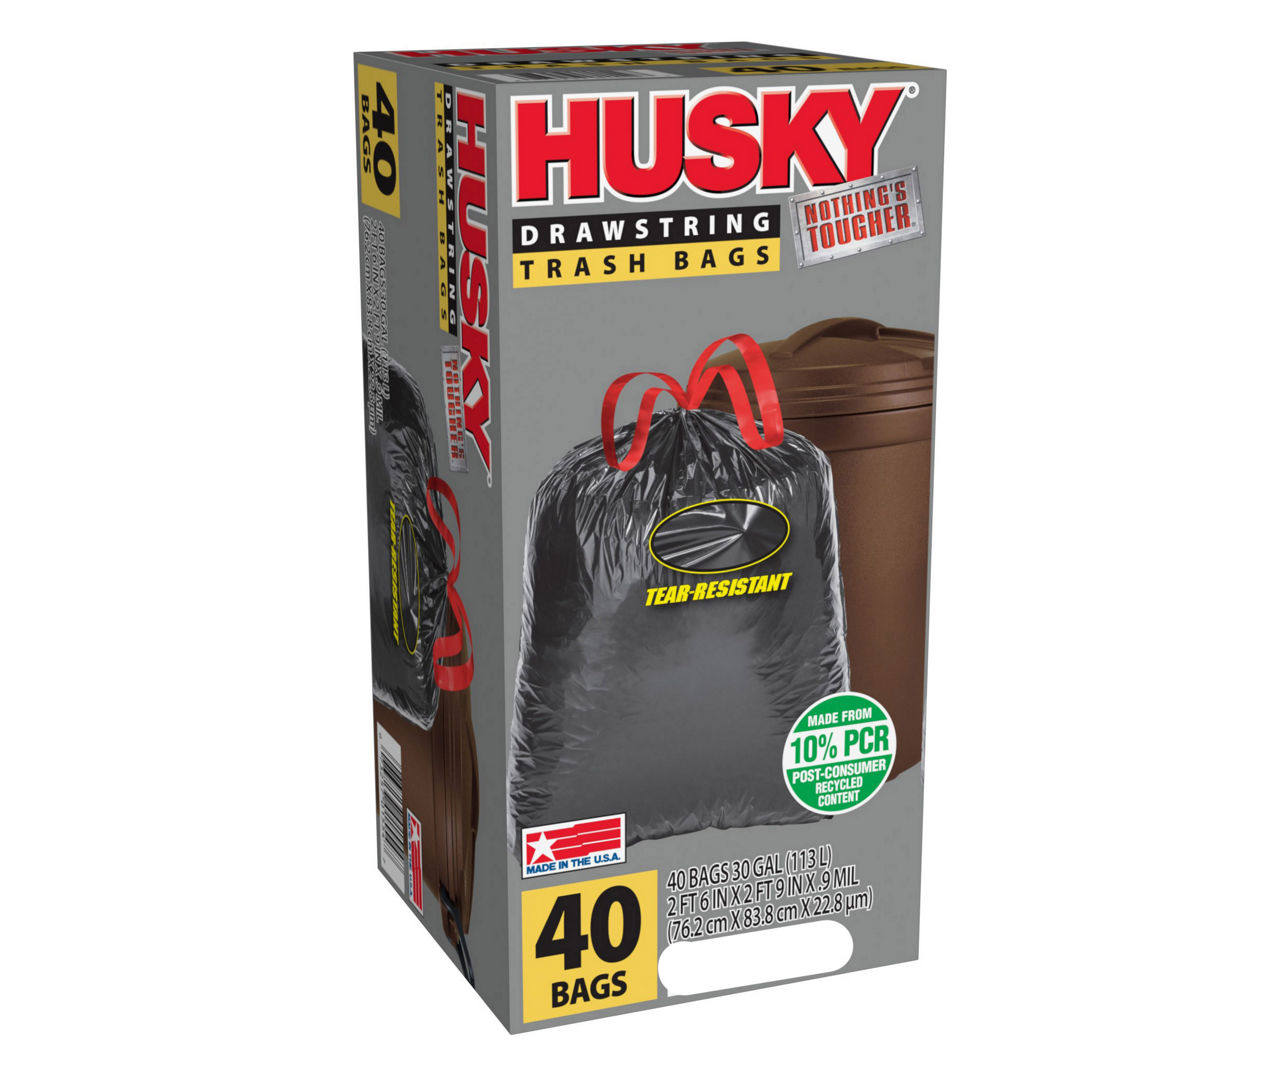 Husky Drawstring Flex Garbage Bags - 45 ct